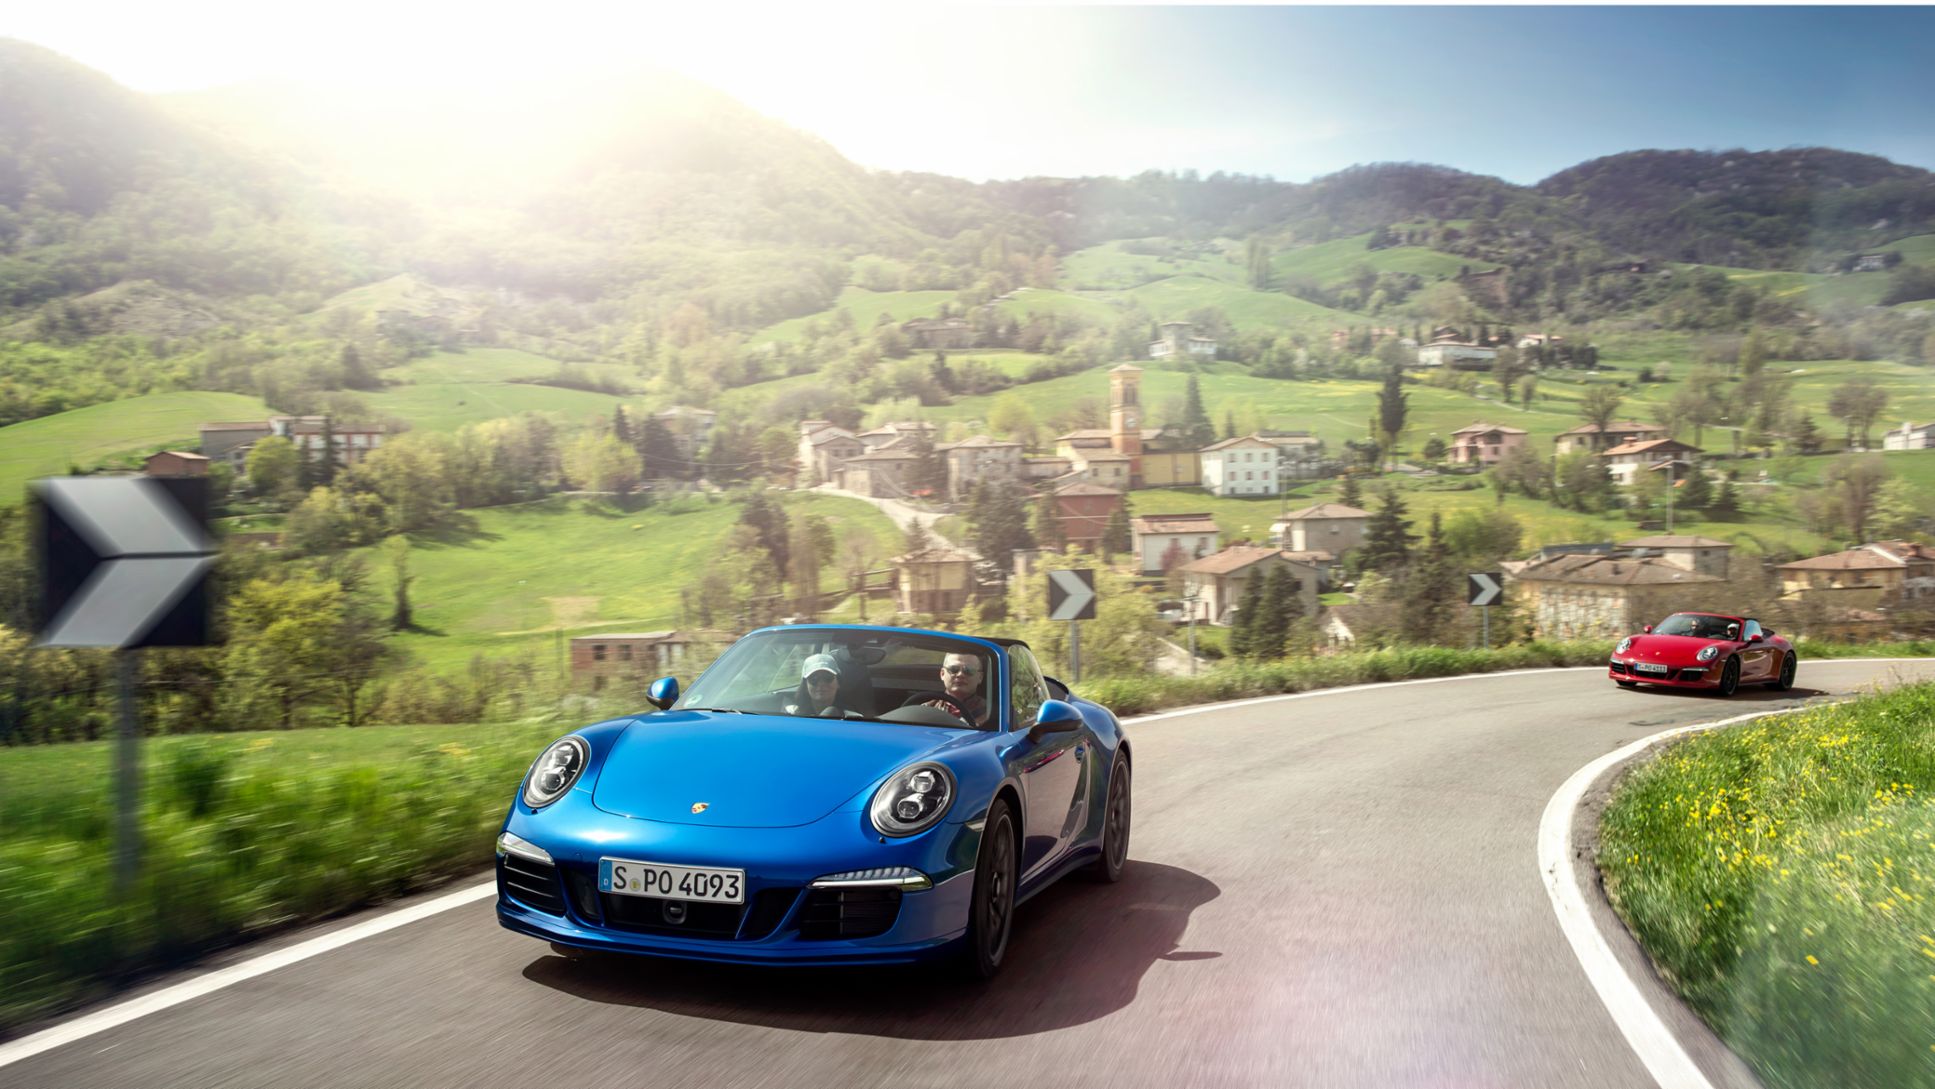 911 Carrera GTS Cabriolet, Porsche Travel Club, Tuscany, 2015, Porsche AG